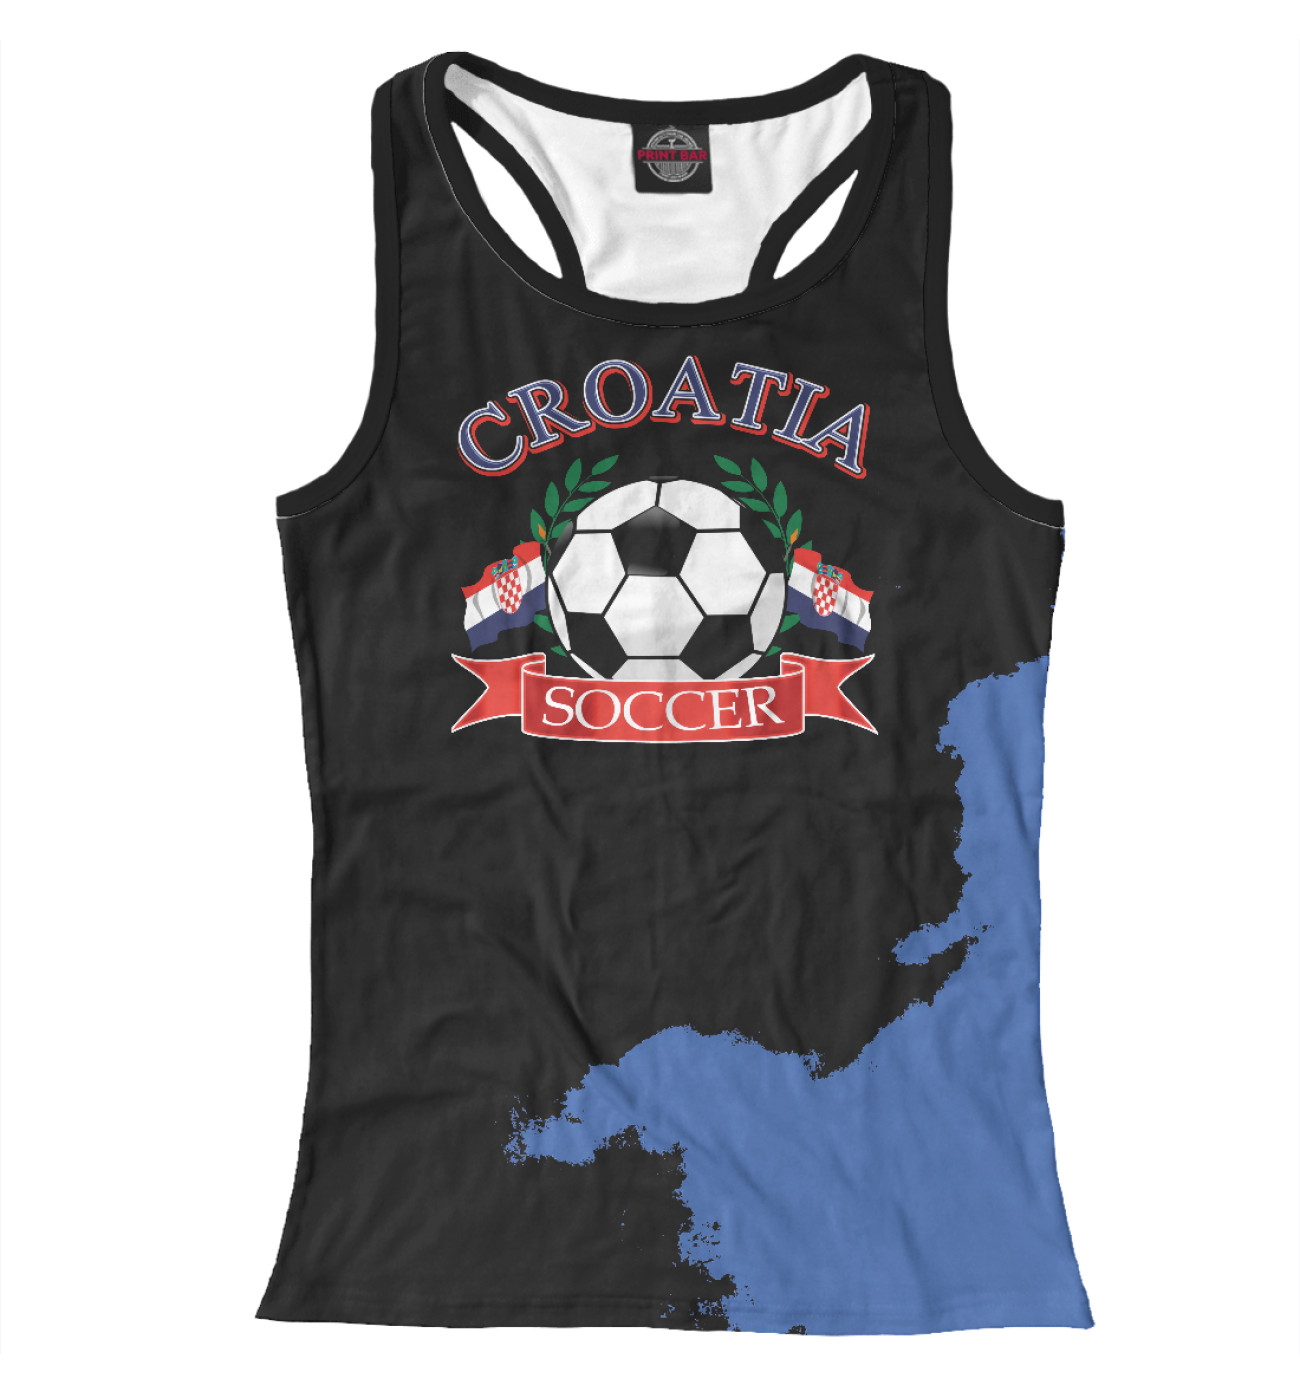 Женская Борцовка Croatia soccer ball, артикул: FTO-670002-mayb-1